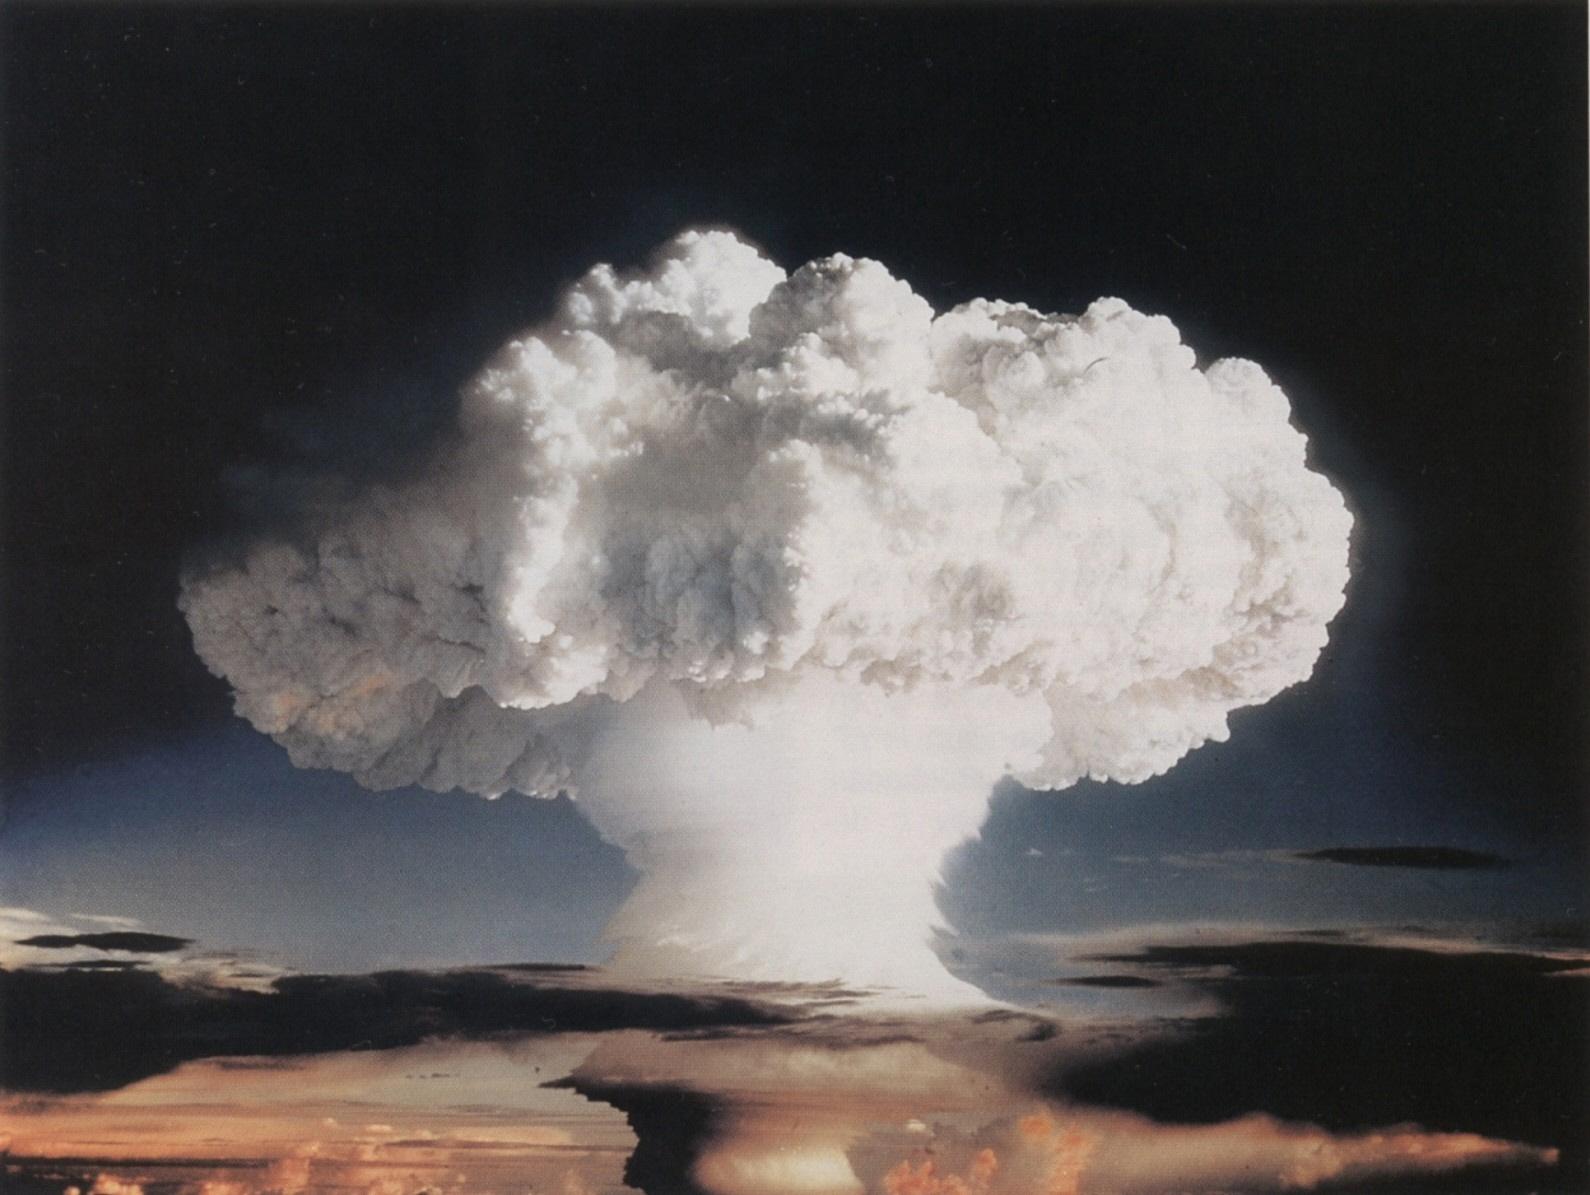 Yhdysvaltojen ensimmäinen vetypommikoe, koodinimeltään »Ivy Mike», räjäytettiin Enewakin atollilla marraskuussa 1952.